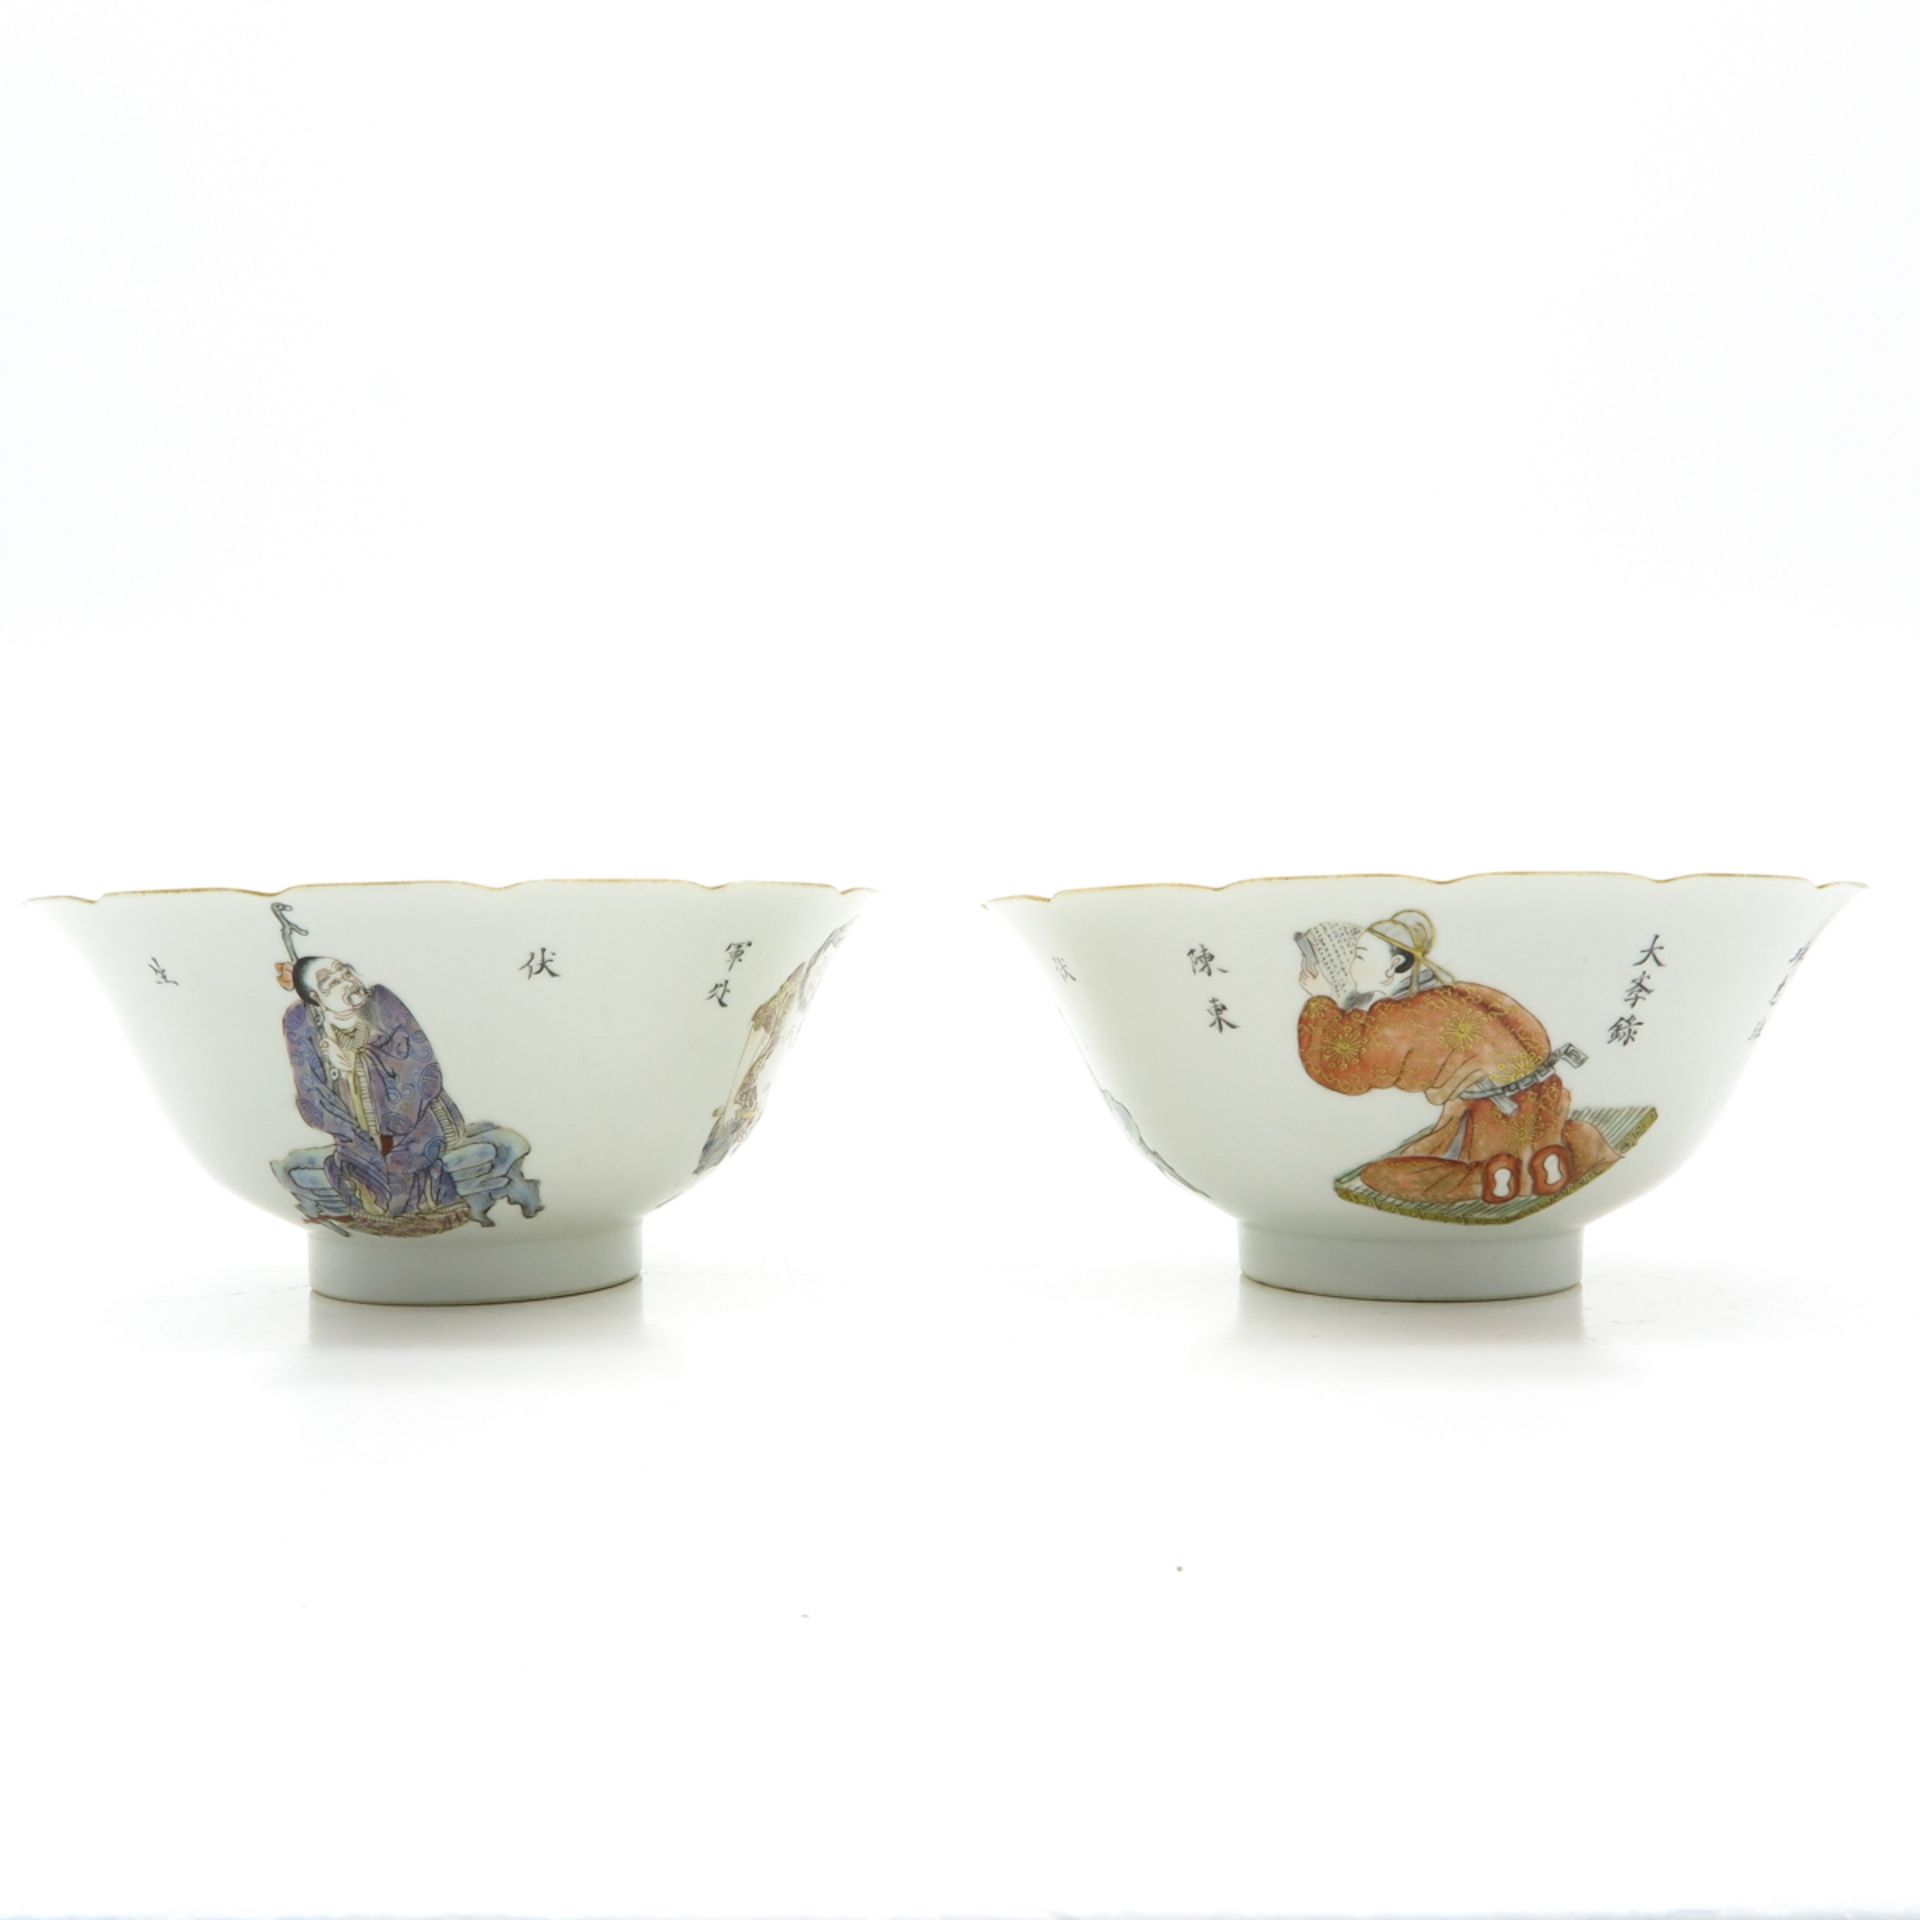 Lot of 2 China Porcelain Wu Shuang Pu Decor Bowls